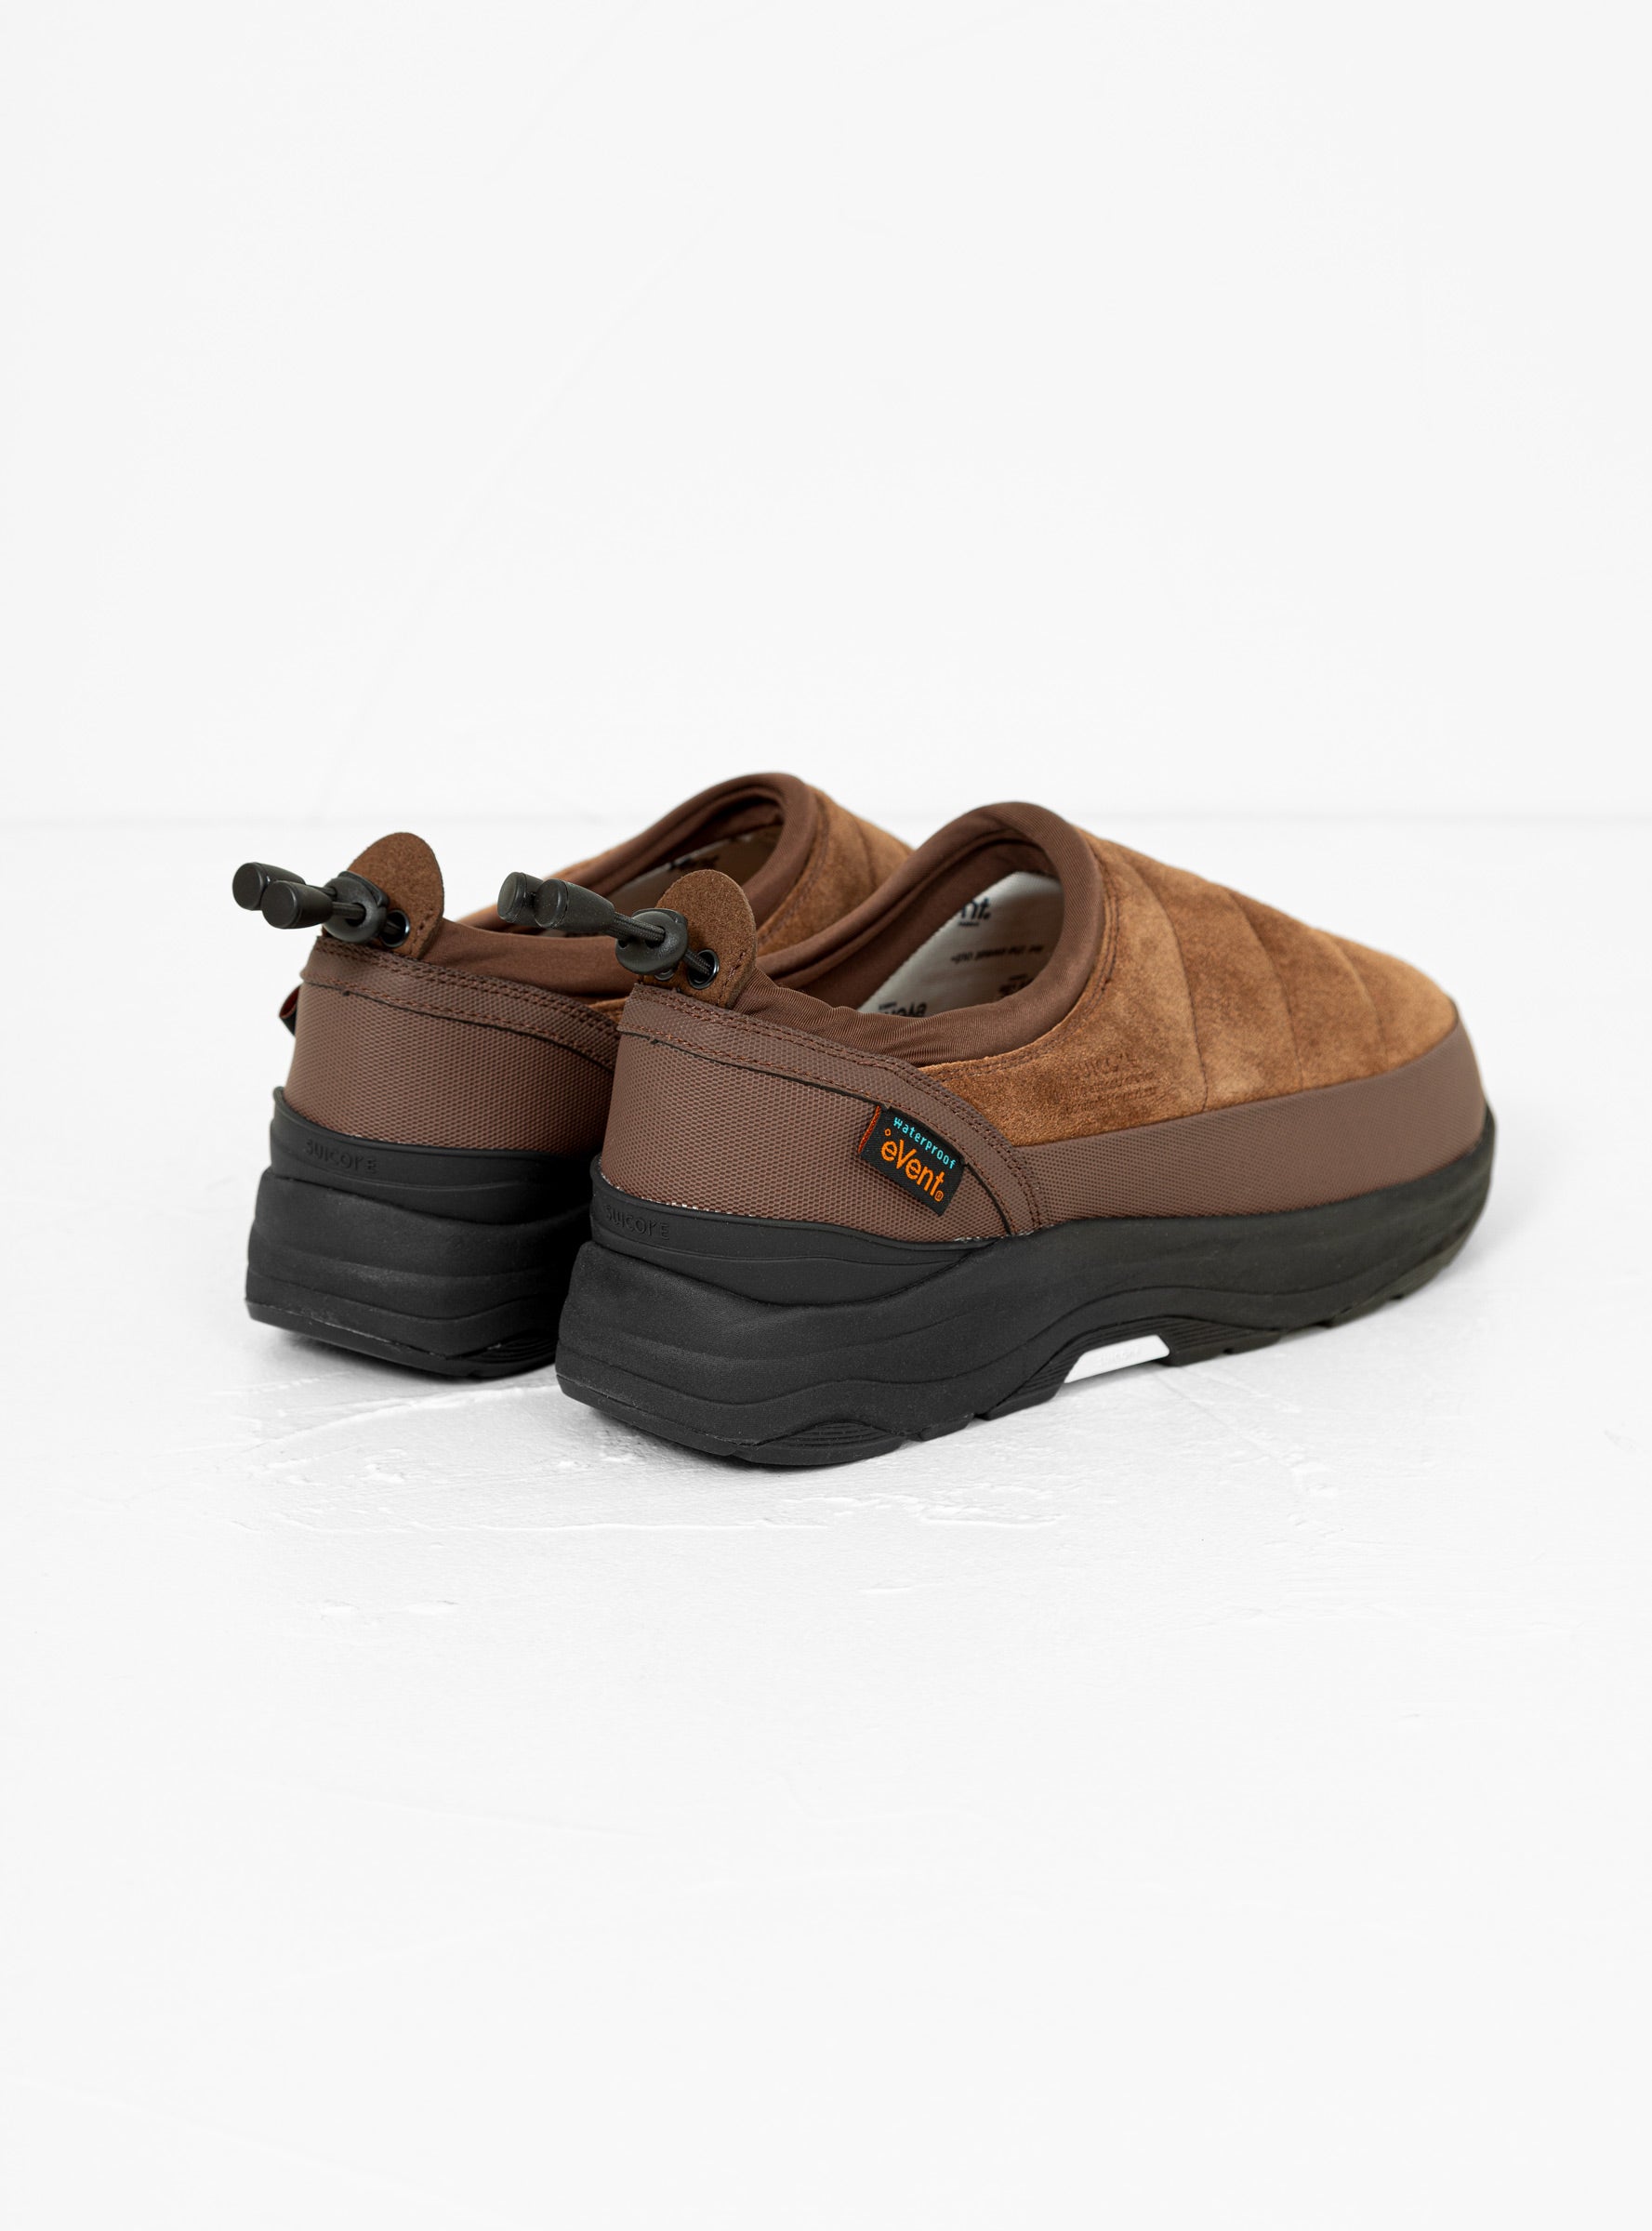 Suicoke Suicoke Pepper Sev Shoes Brown - Size: UK 11